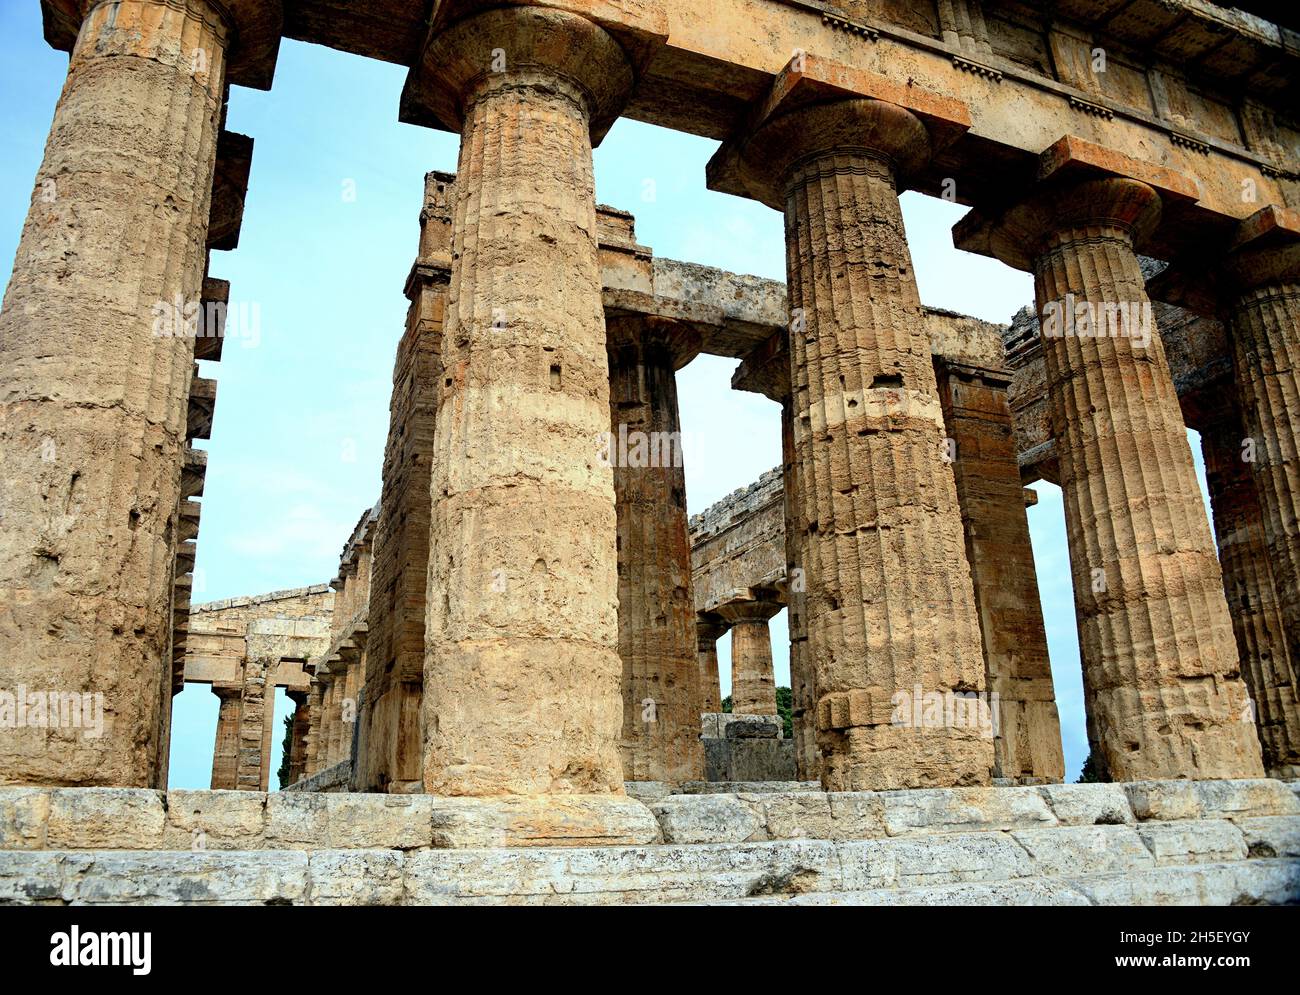 Tempio di Nettuno-Paestum, antica città di Magna Graecia chiamata dai Greci Poseidonia in onore di Poseidone, ma molto devota ad Atena e Hera. Foto Stock